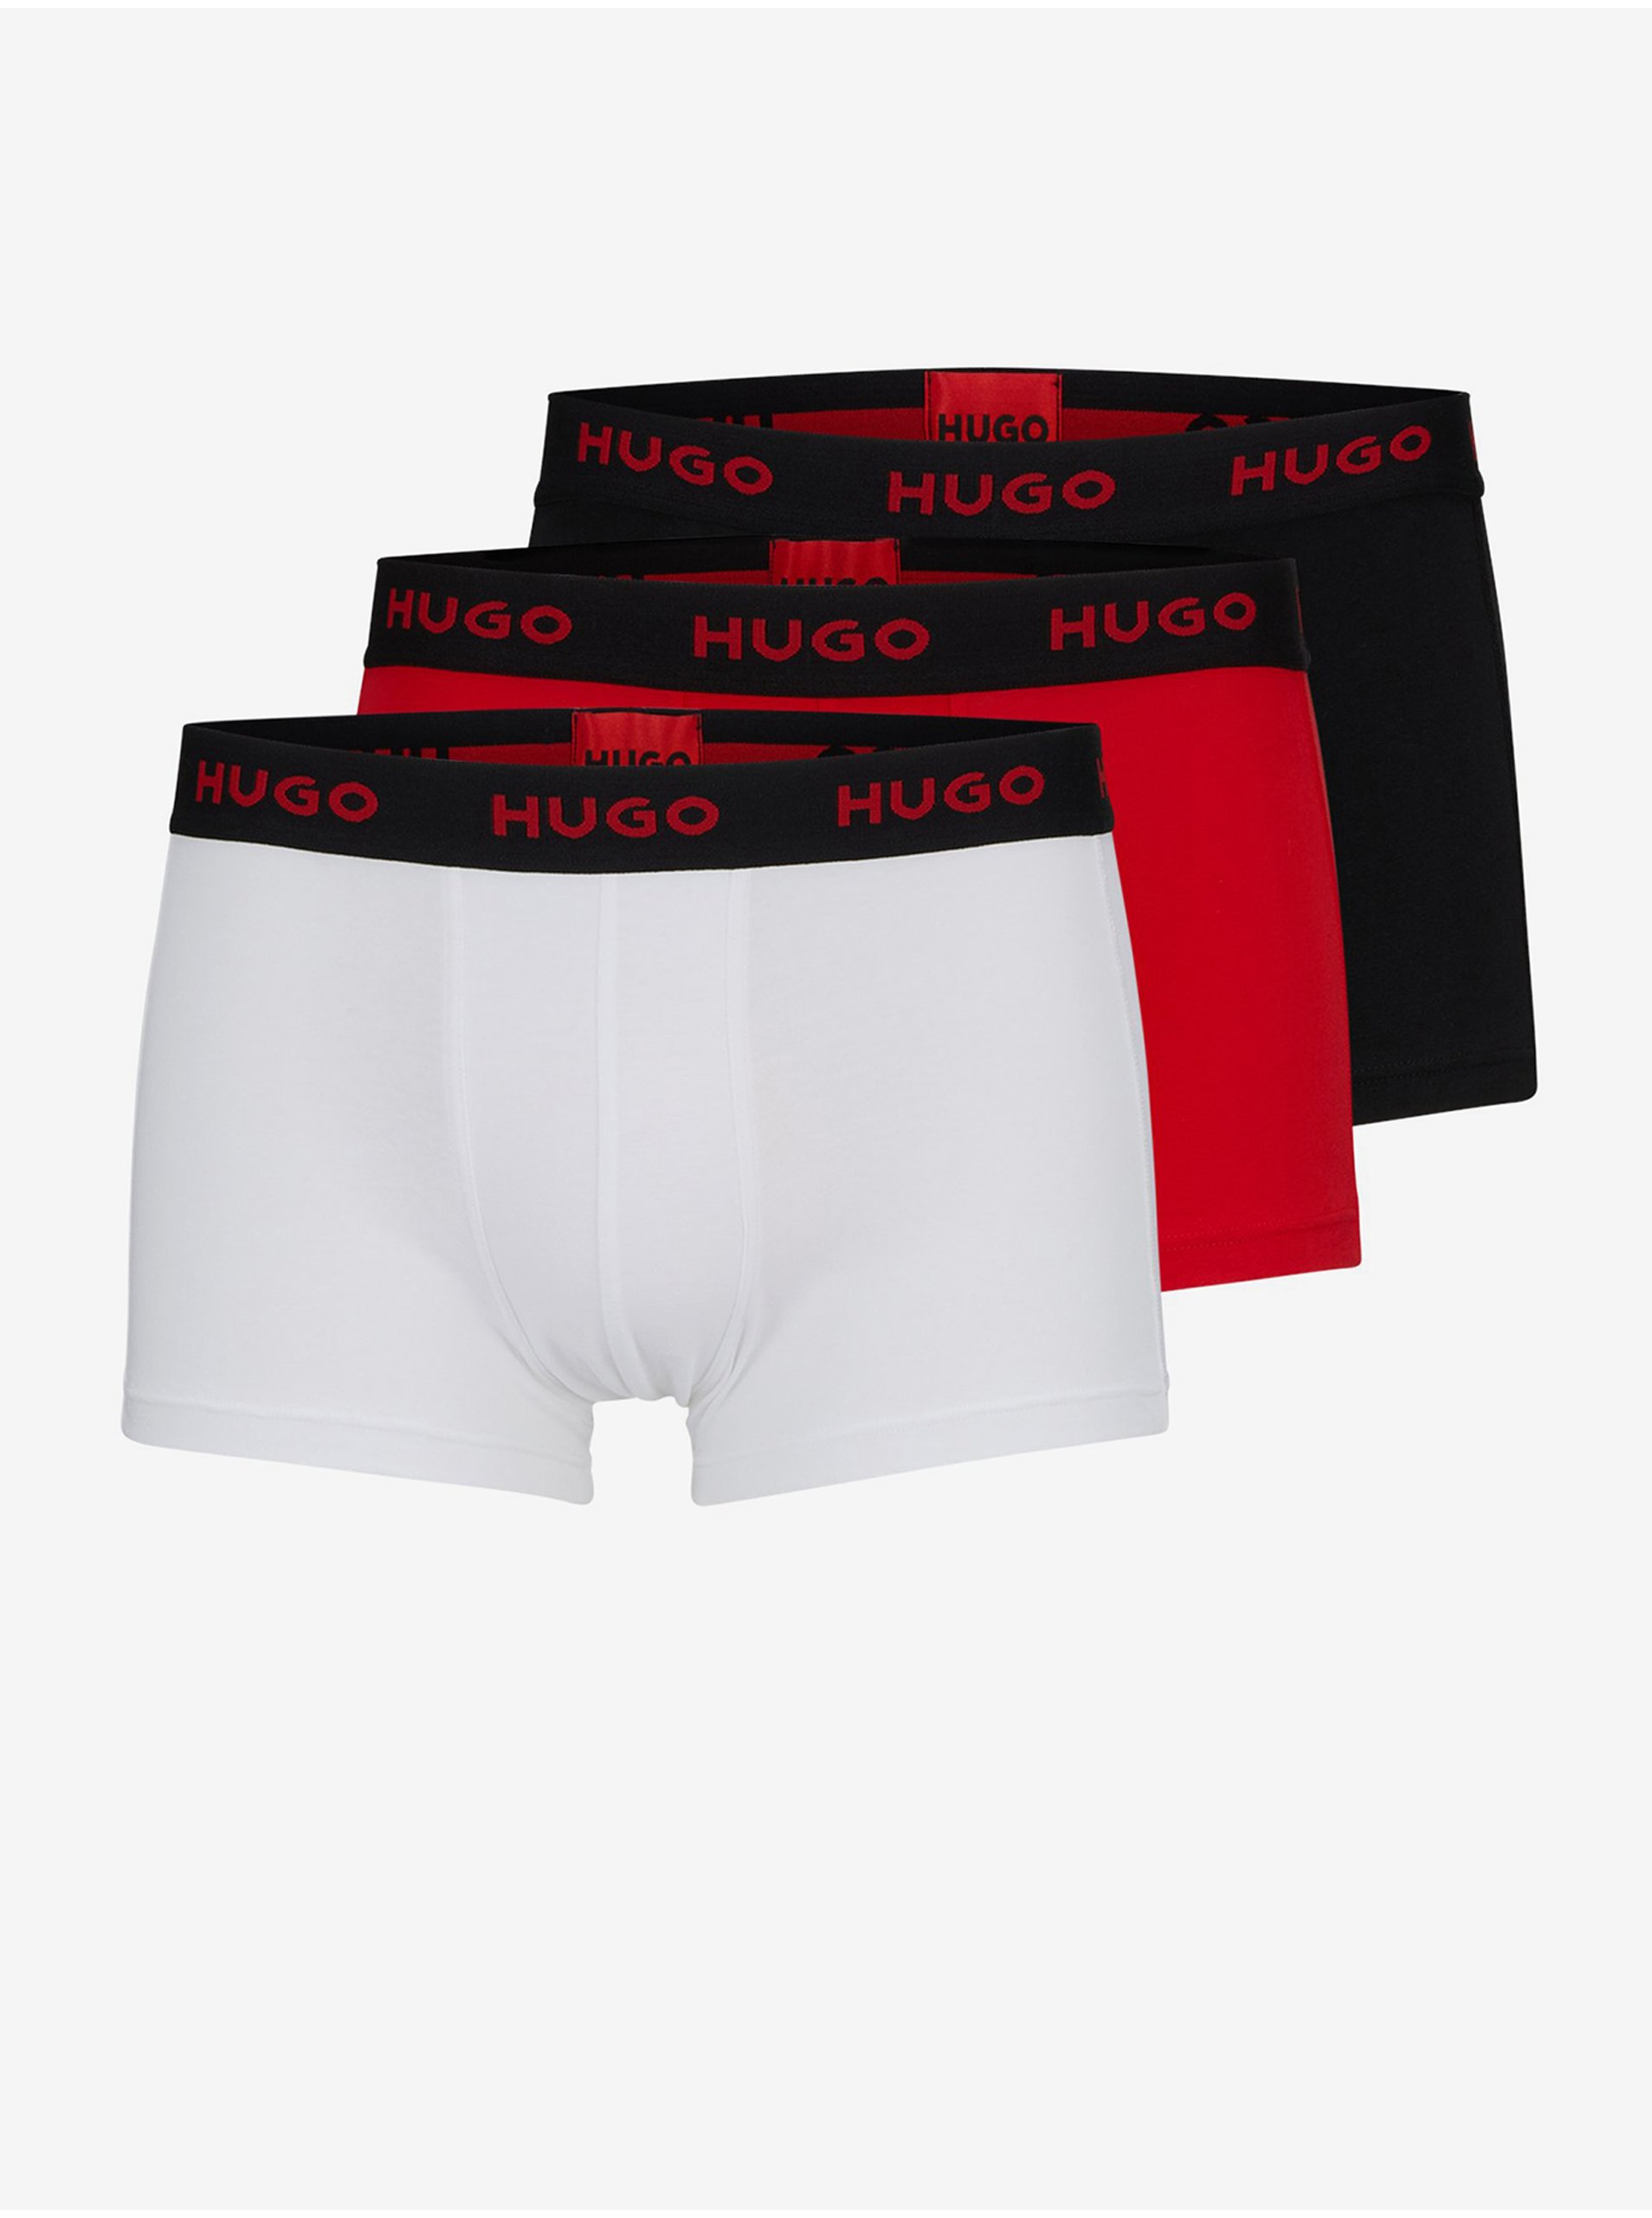 E-shop Sada tří pánských boxerek v červené, černé a bílé barvě HUGO